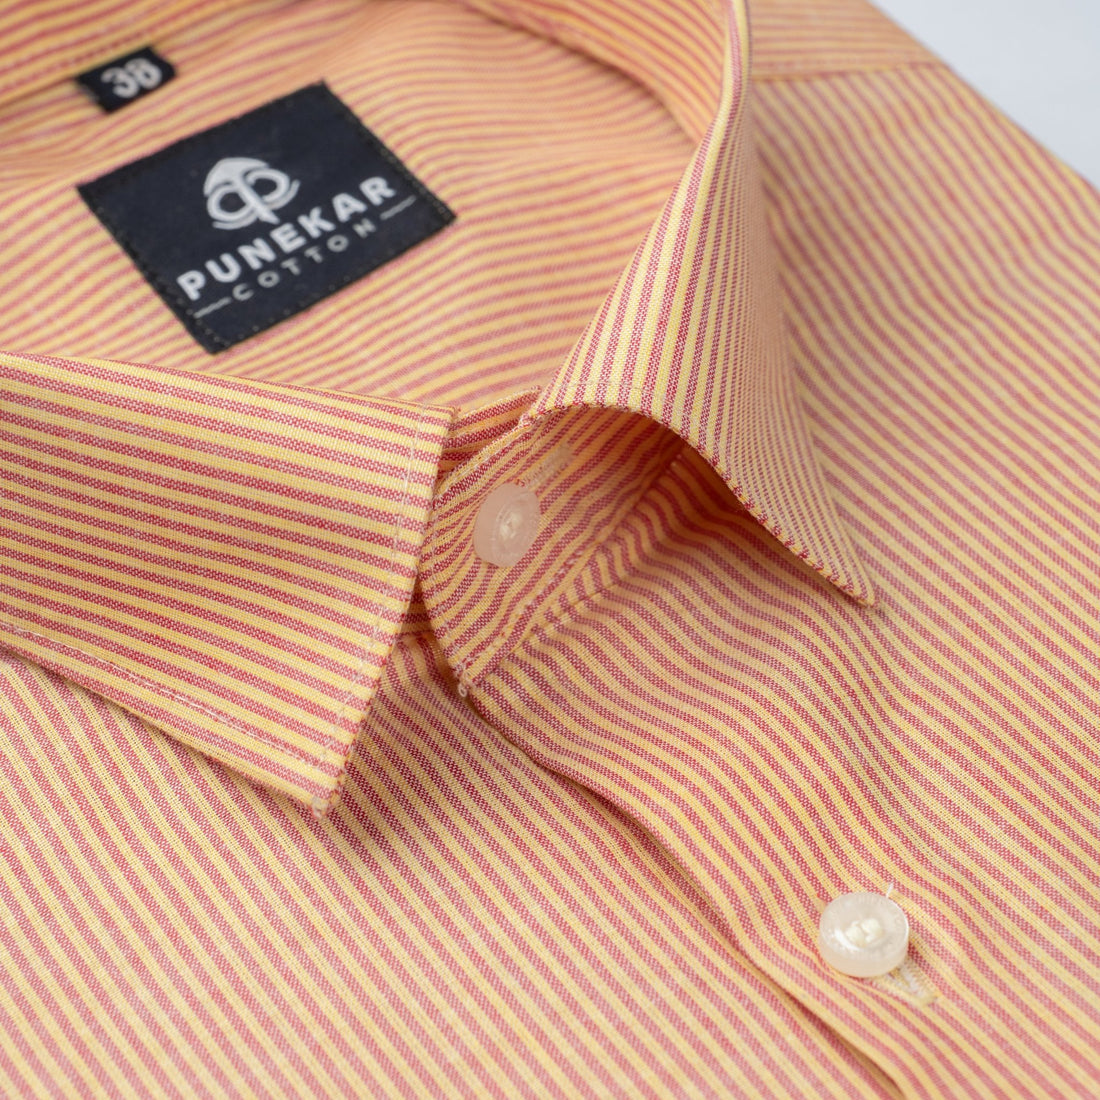 Light Orange Color Lining Paper Cotton Shirts For Men - Punekar Cotton